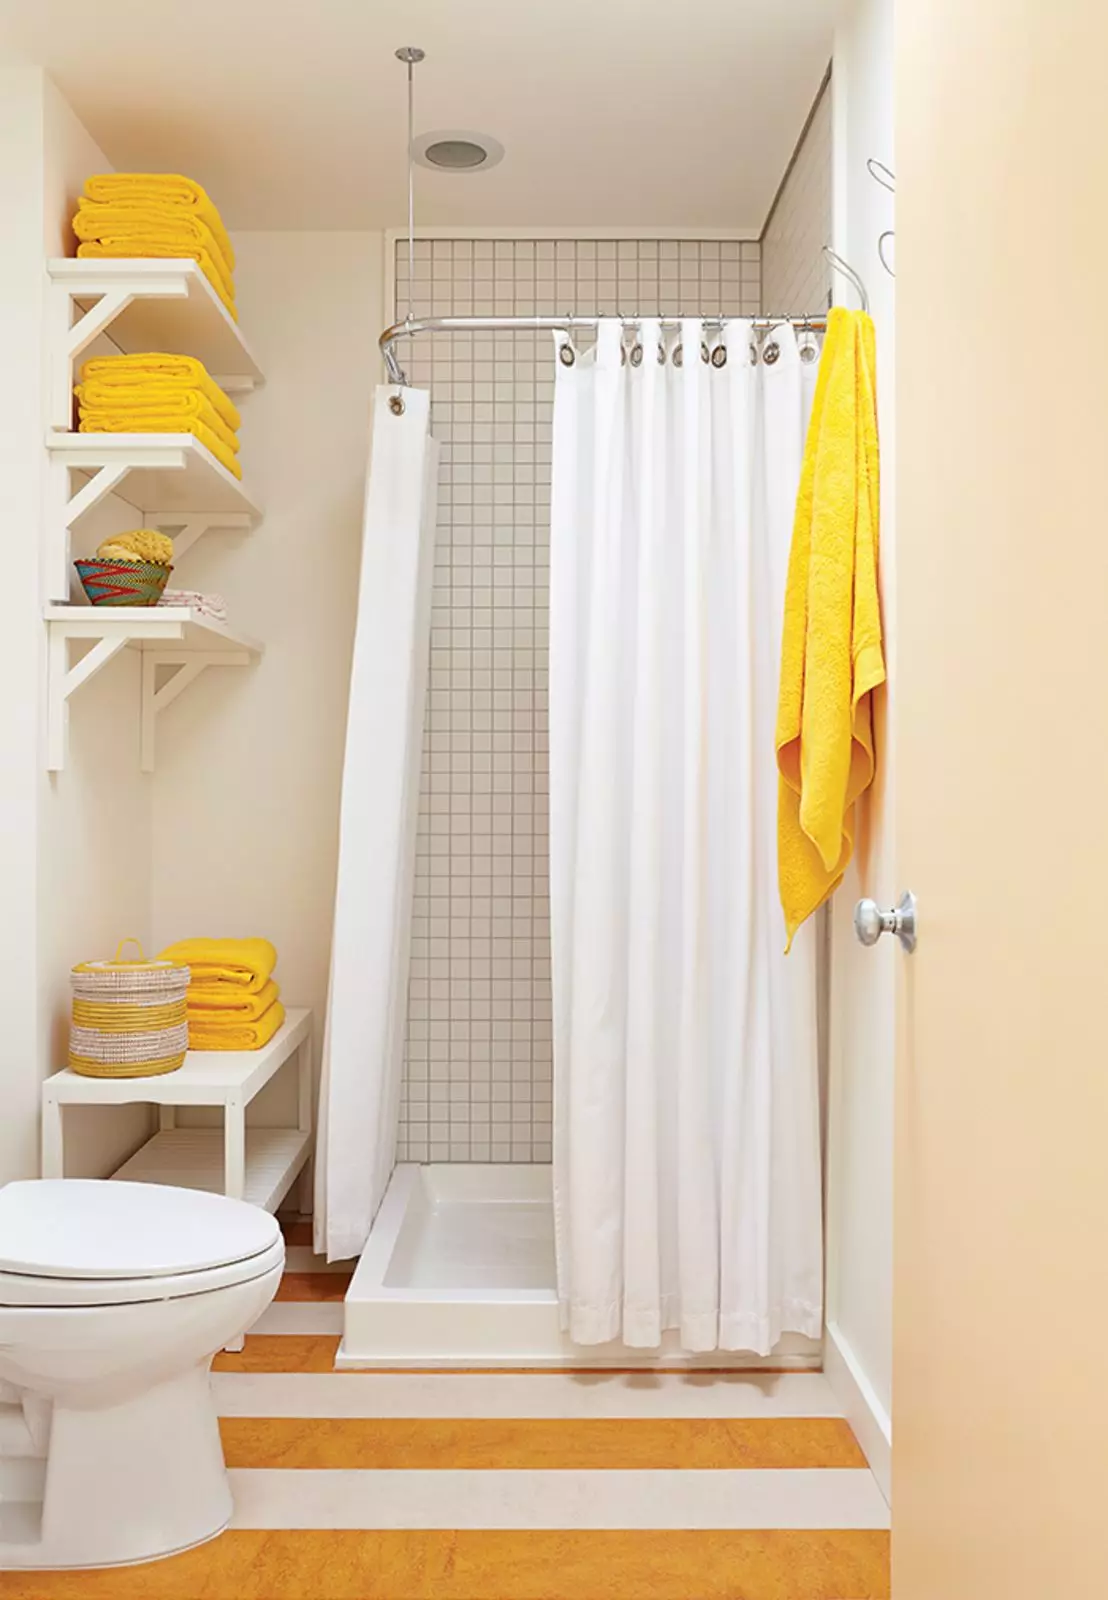 Cortines per a la dutxa: cortines de tela i altres models per a la dutxa. Com recollir-los? 10296_4